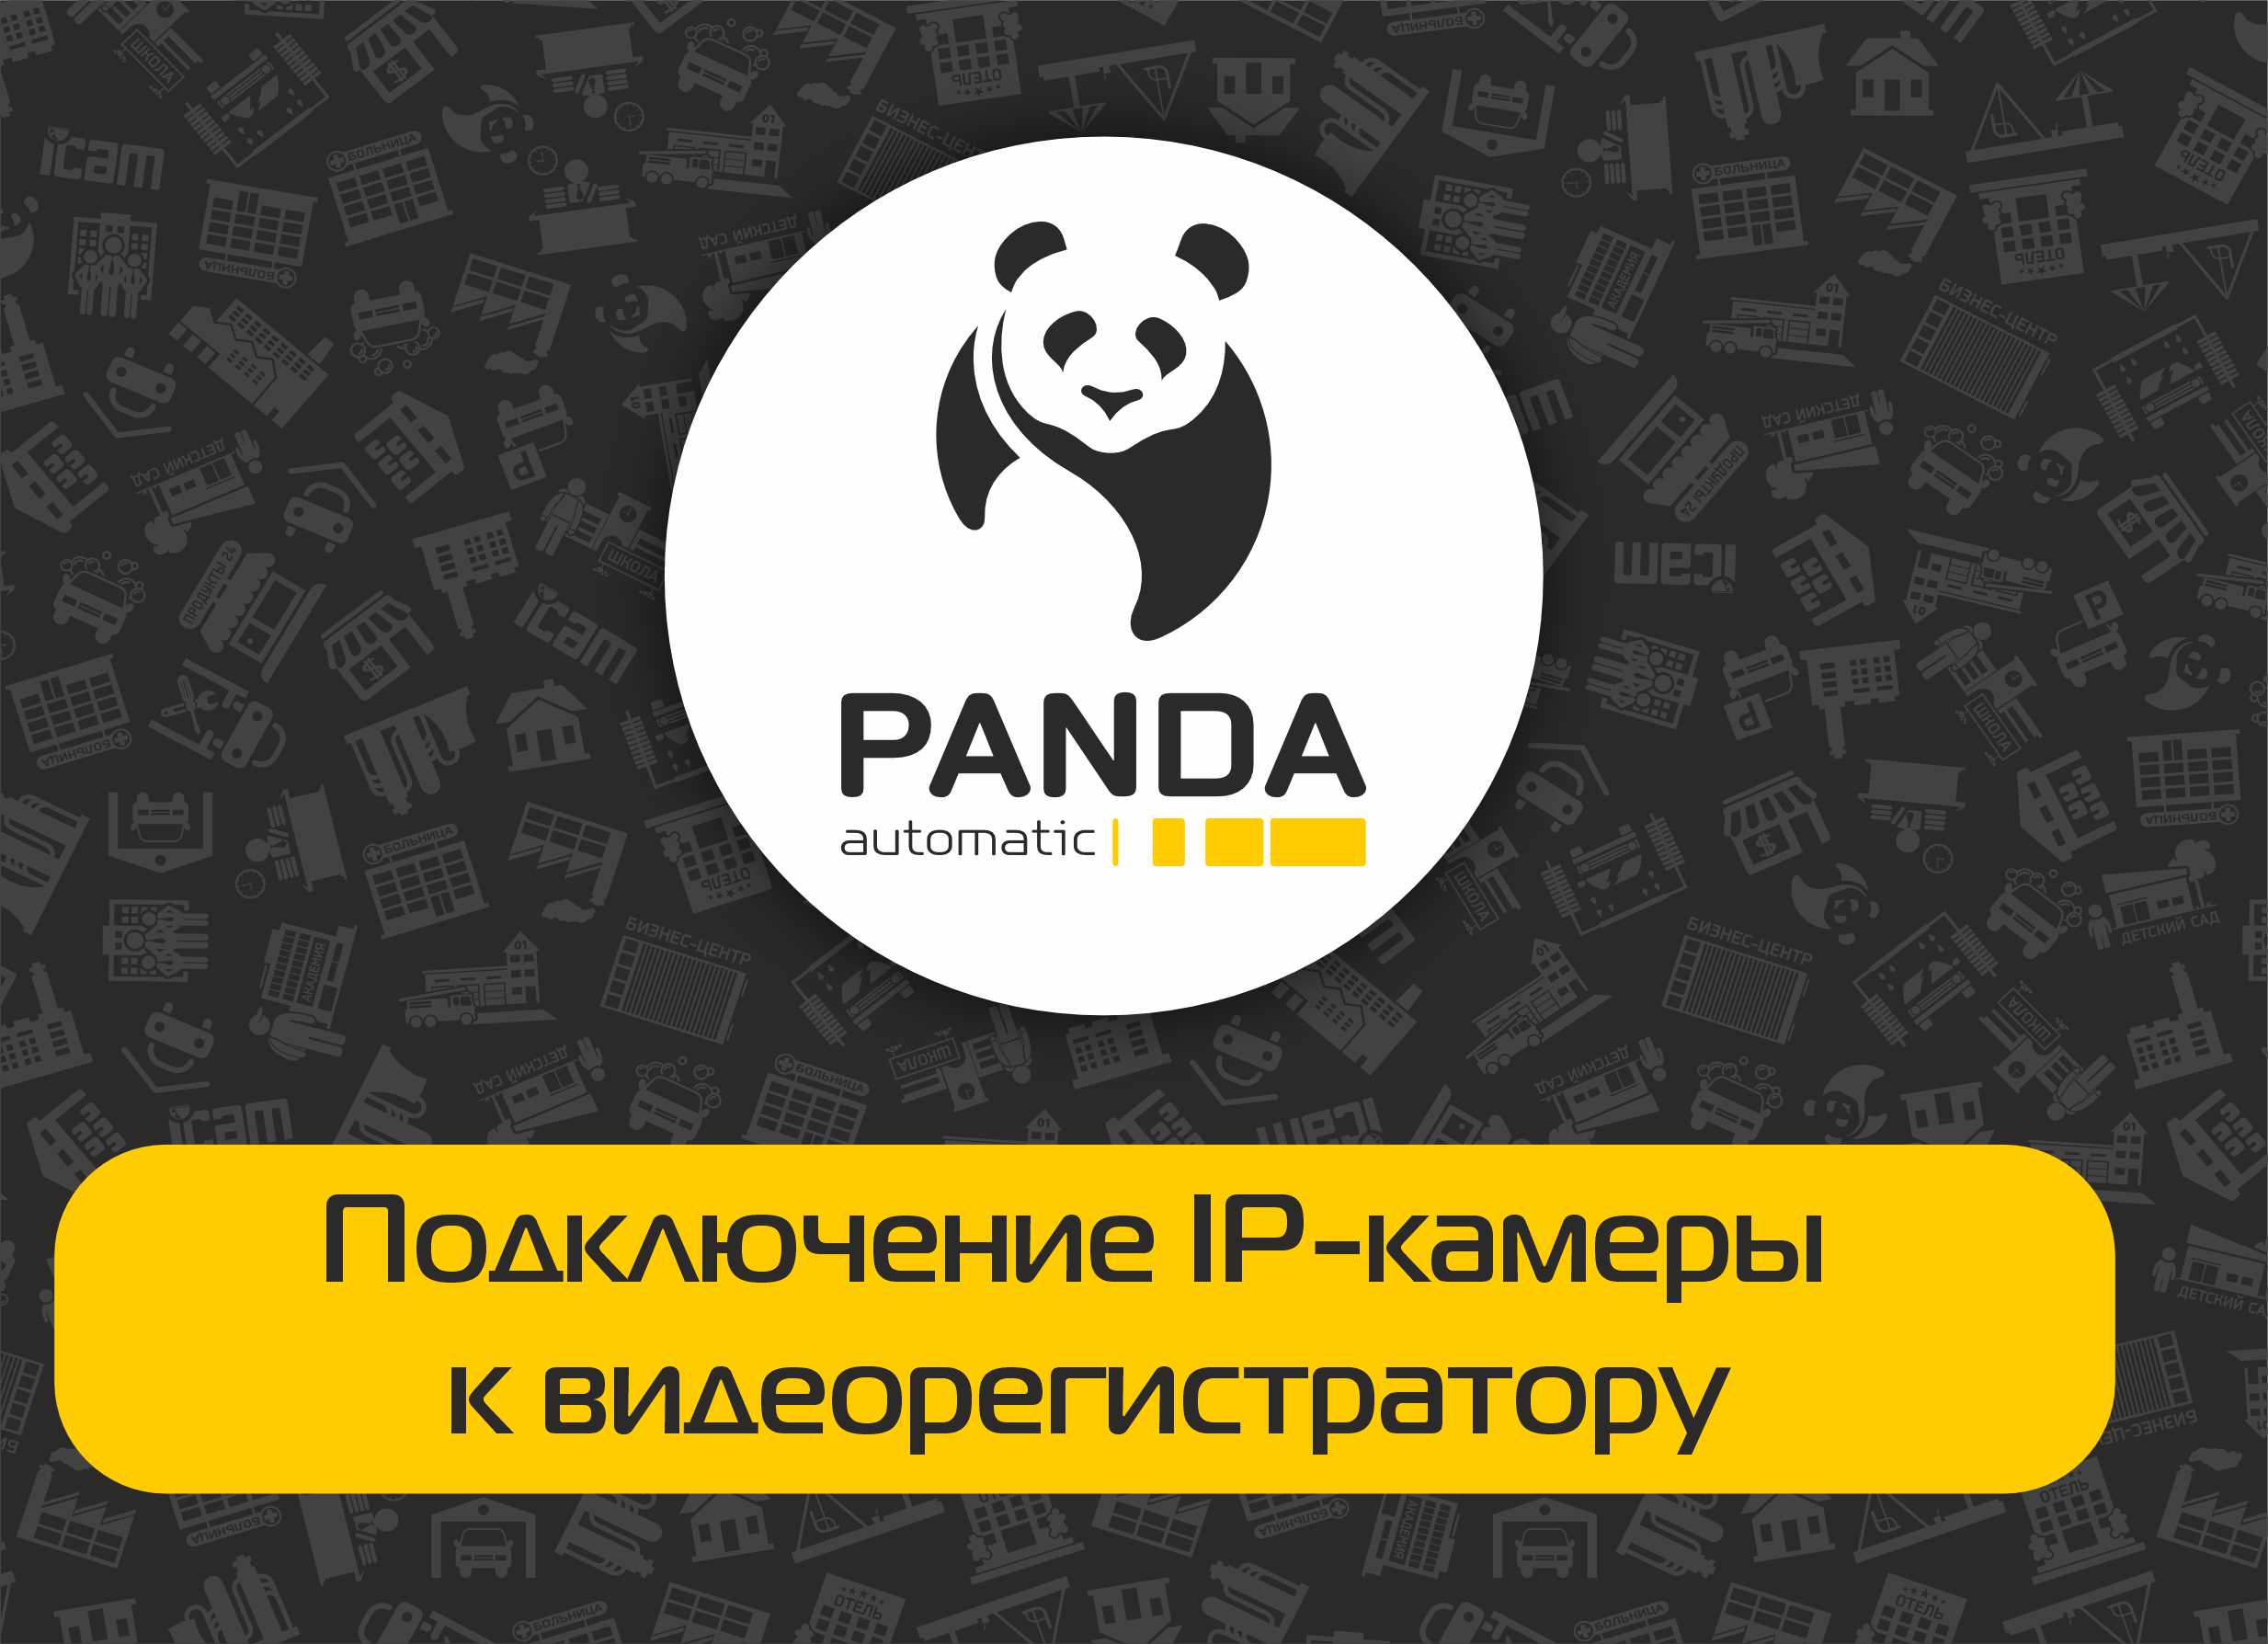  Подключение IP-камеры Panda Automatic к видеорегистратору Panda Automatic